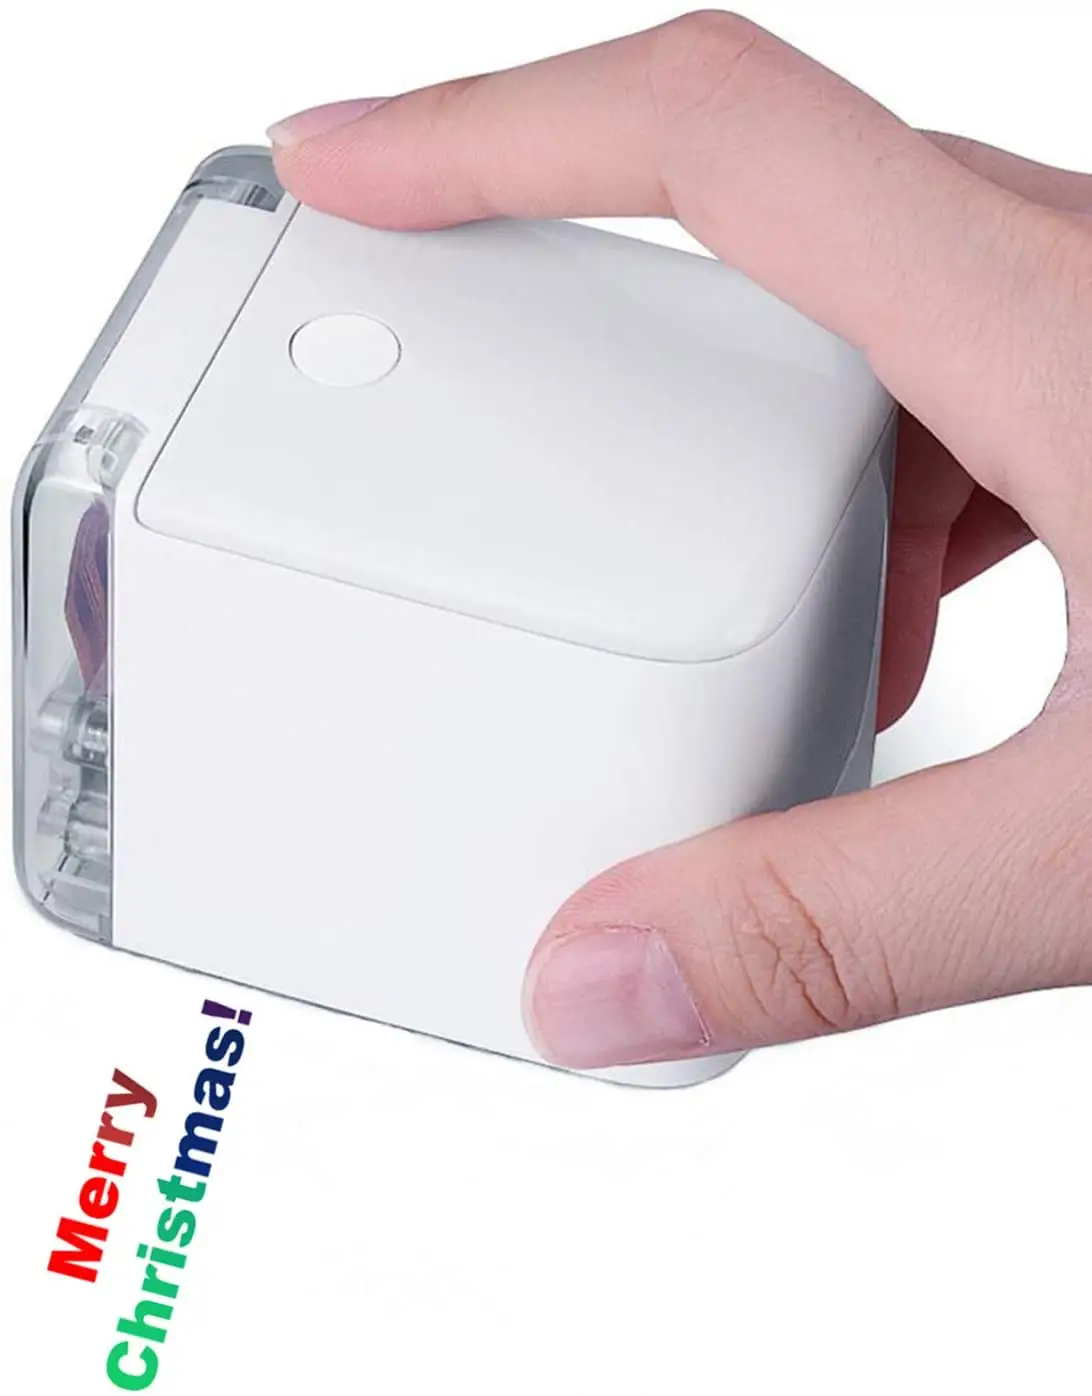 Mini impresora de inyección de tinta portátil, dispositivo de impresión portátil a Color, inalámbrico por USB, Princube MBrush